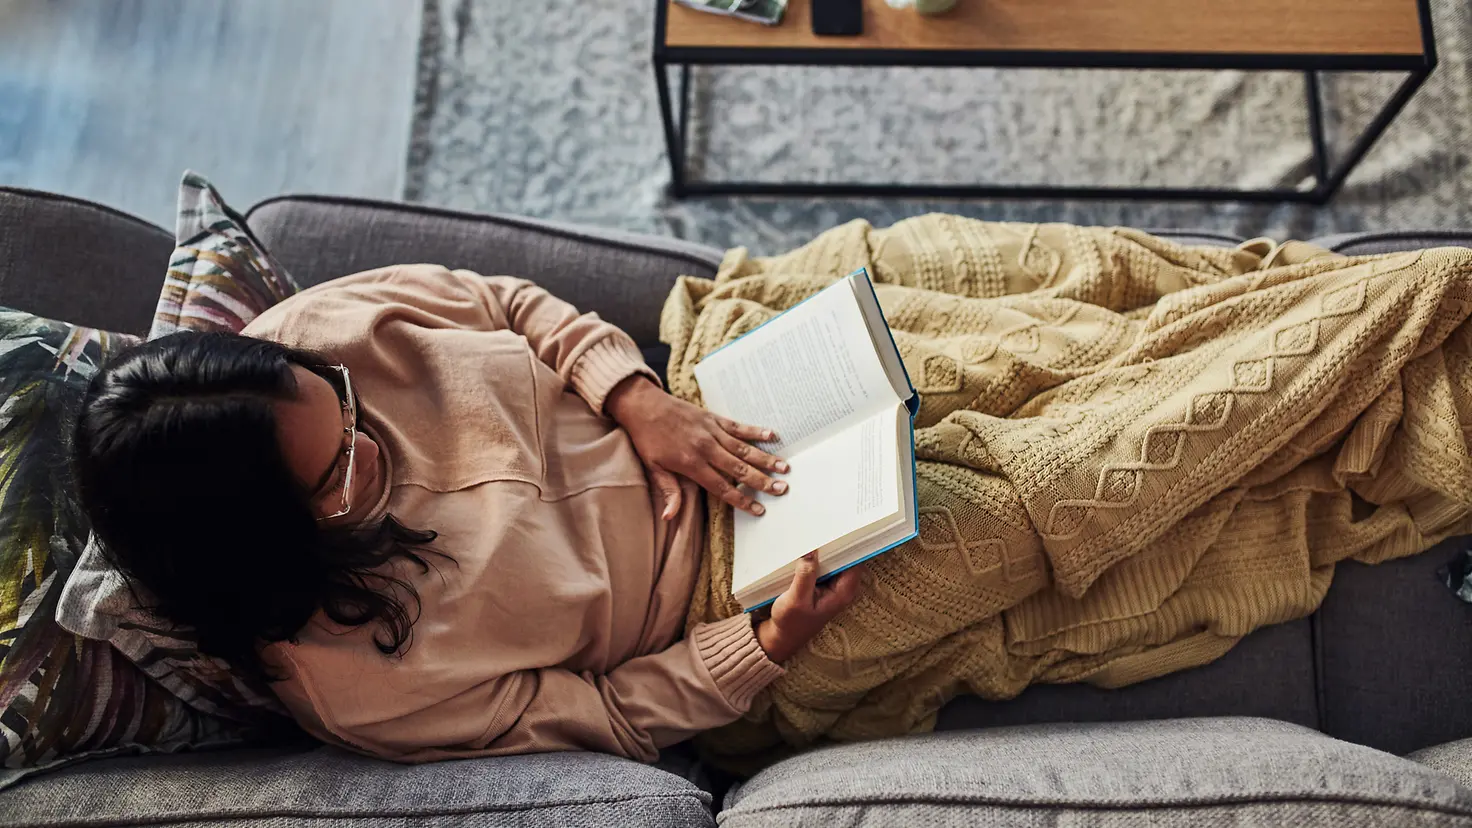 Eine Von-Oben-Aufnahme: eine Frau liegt zugedeckt auf einer Couch und liest in einem Buch.